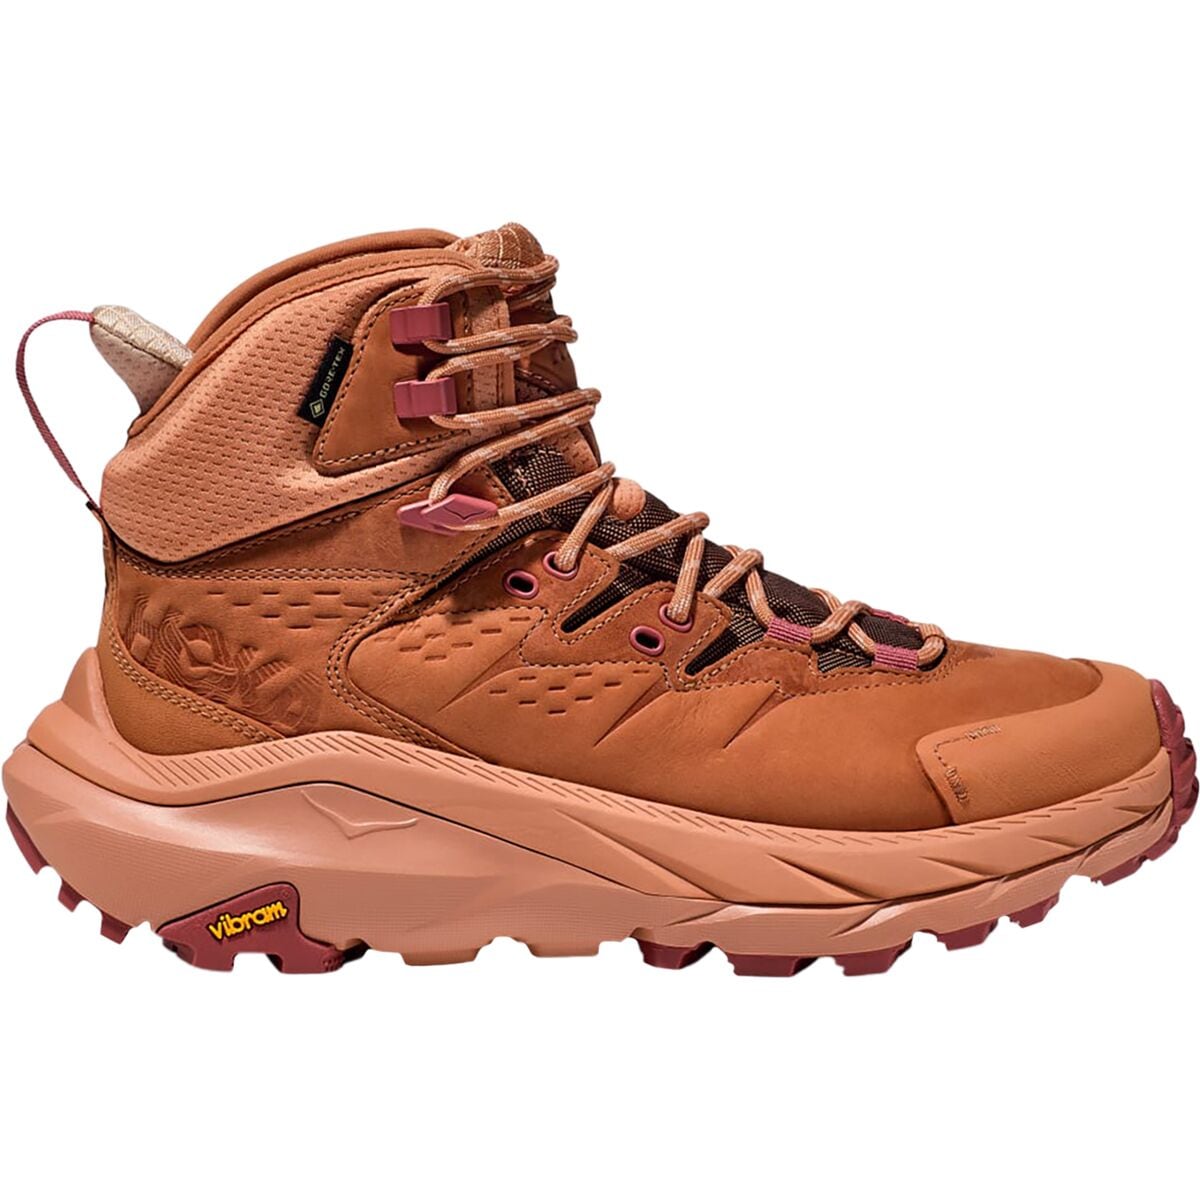 Kaha 2 GTX Hiking Boot - Women